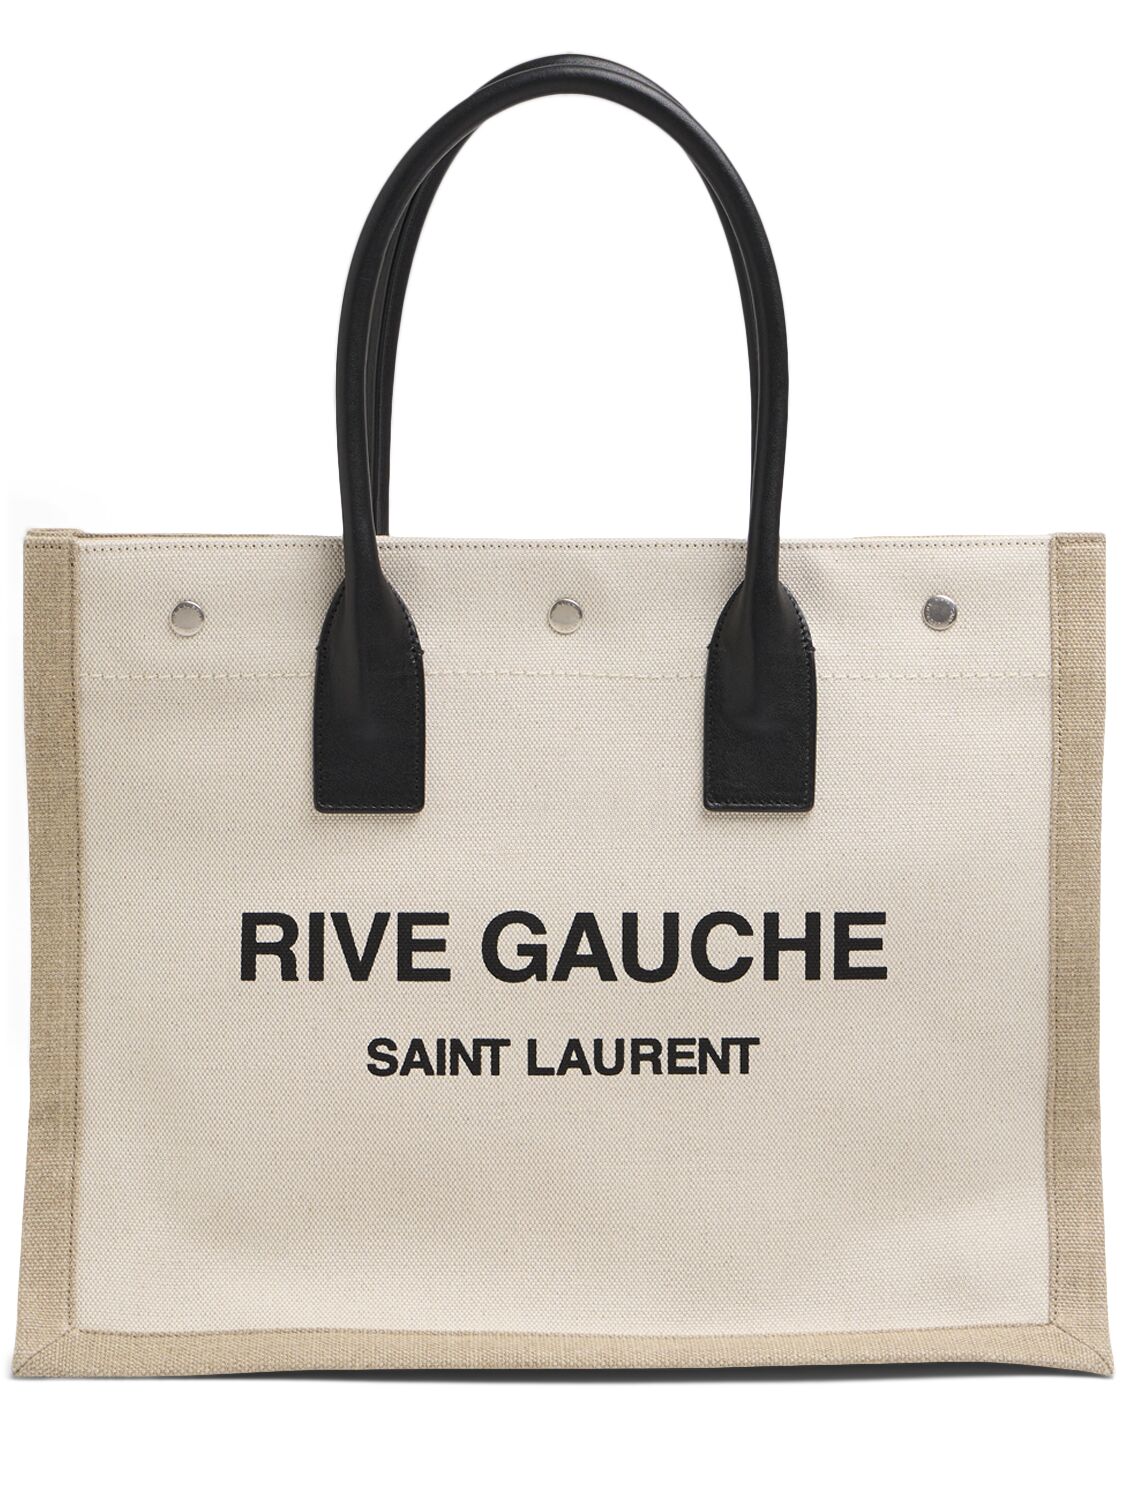 Rive Gauche Tote Bag - SAINT LAURENT - Modalova